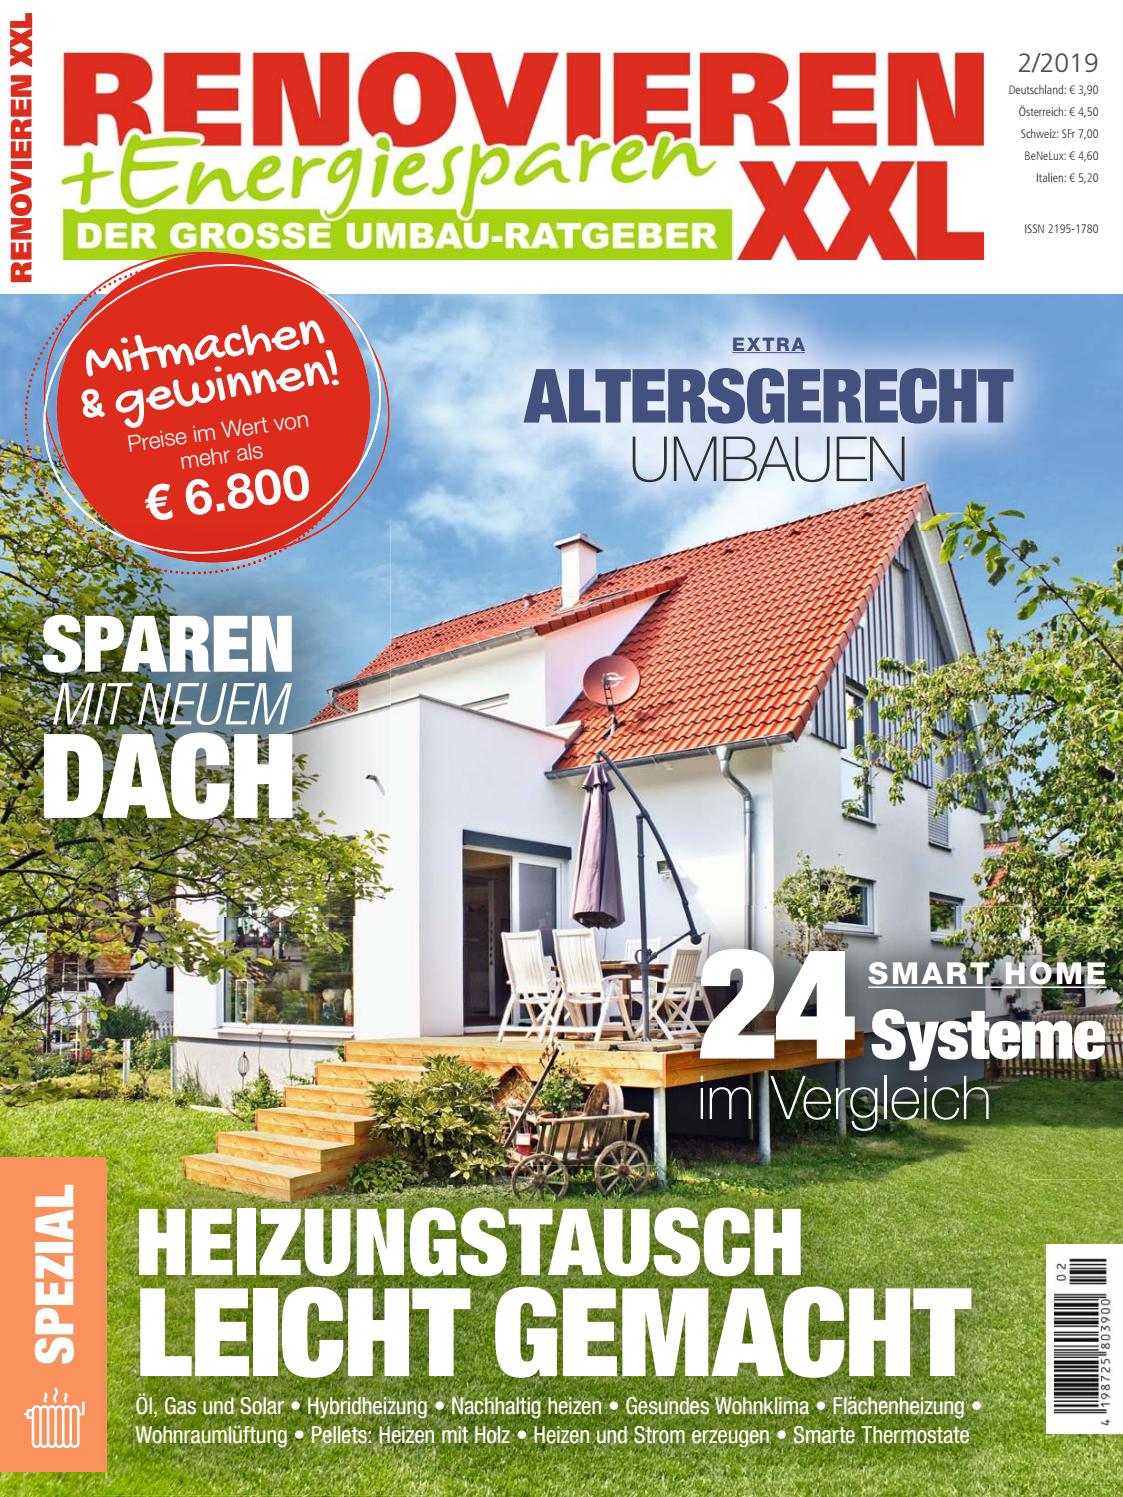 Regenwasserspeicher Garten Inspirierend Renovieren & Energiesparen 2 2019 by Family Home Verlag Gmbh